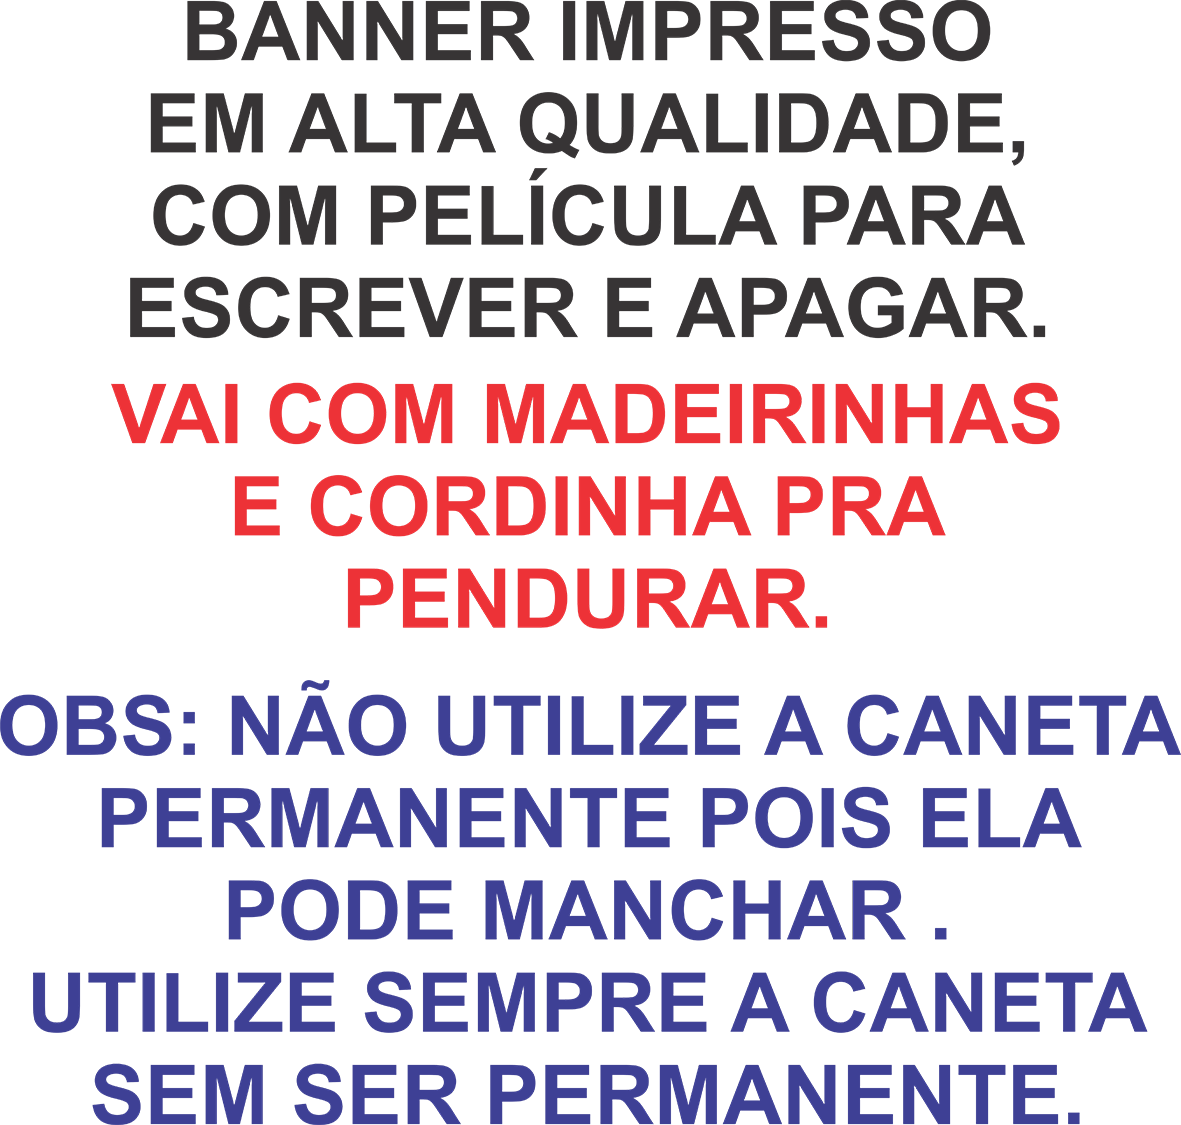 Banner Hortaliças tabela de preços escreve e apaga especial com laminação